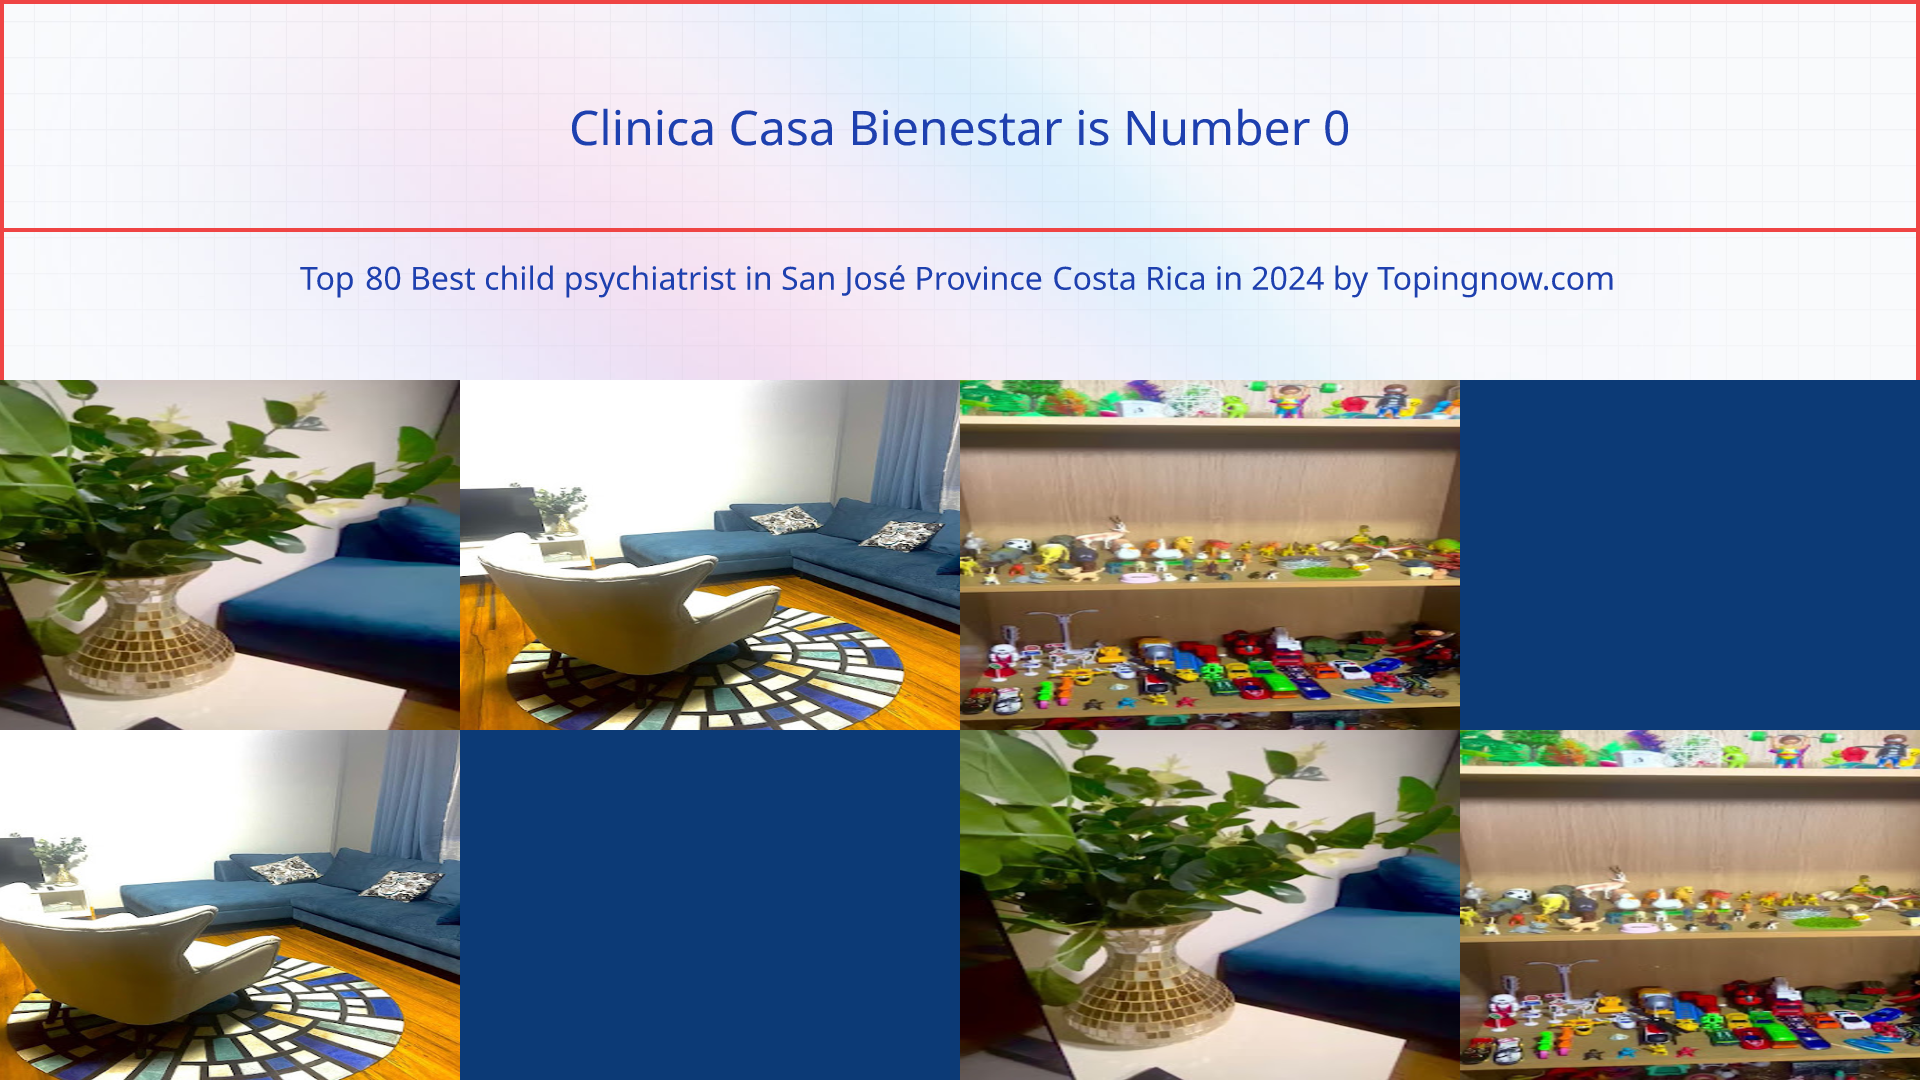 Clinica Casa Bienestar: Top 80 Best child psychiatrist in San José Province Costa Rica in 2024